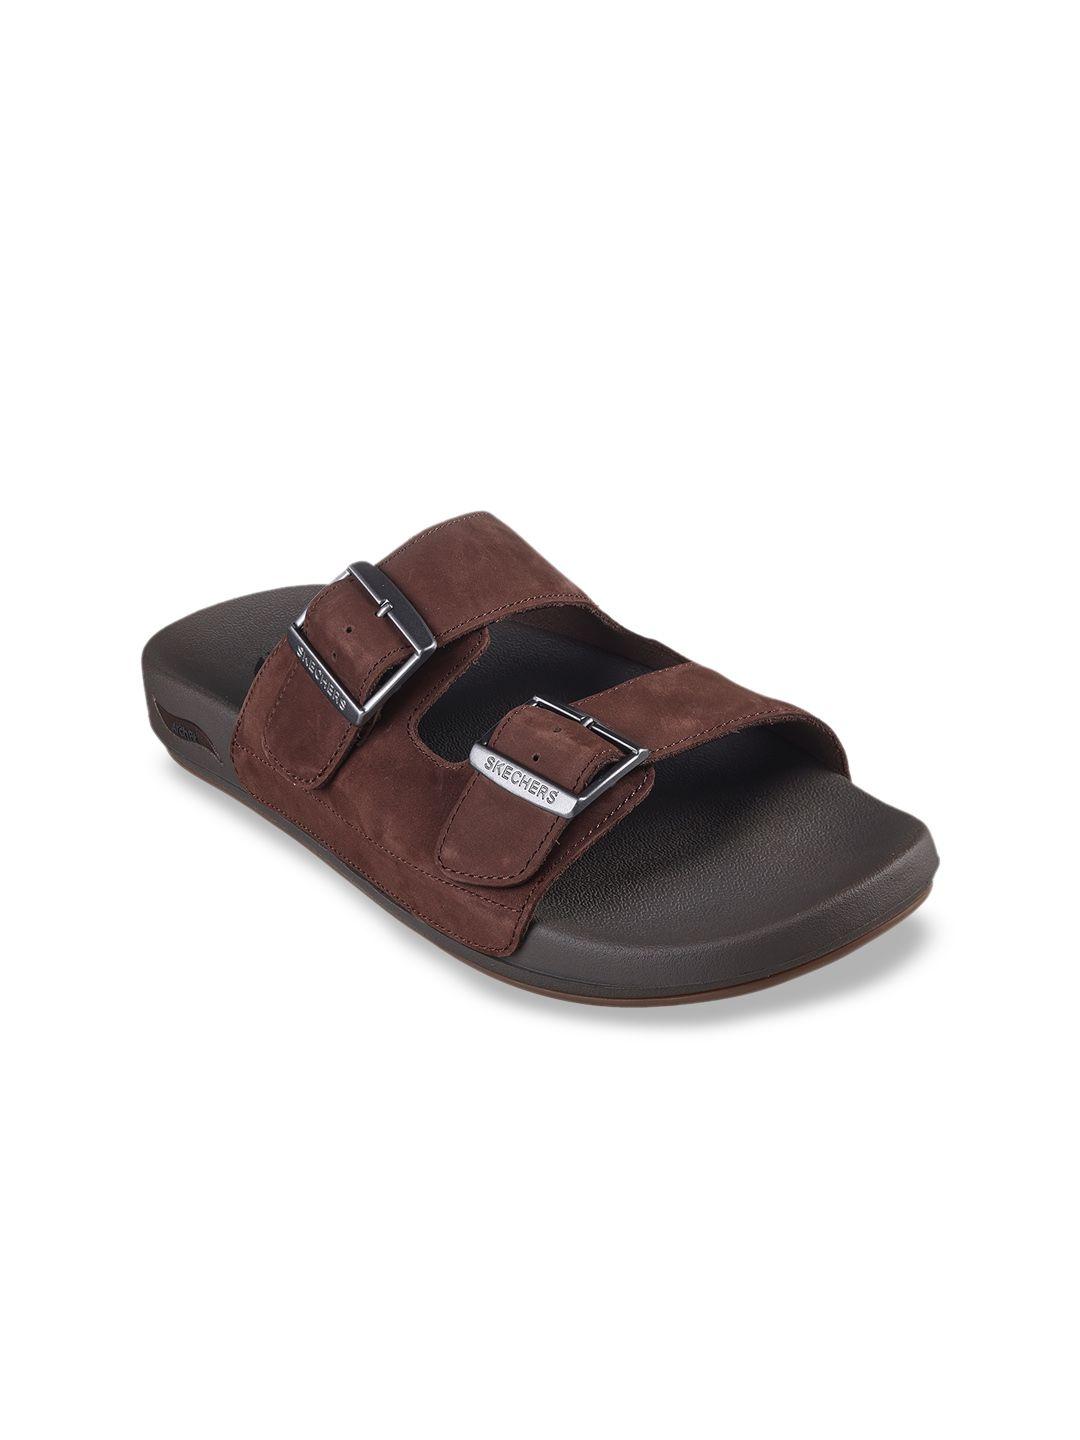 skechers men arch fit pro leather comfort sandals